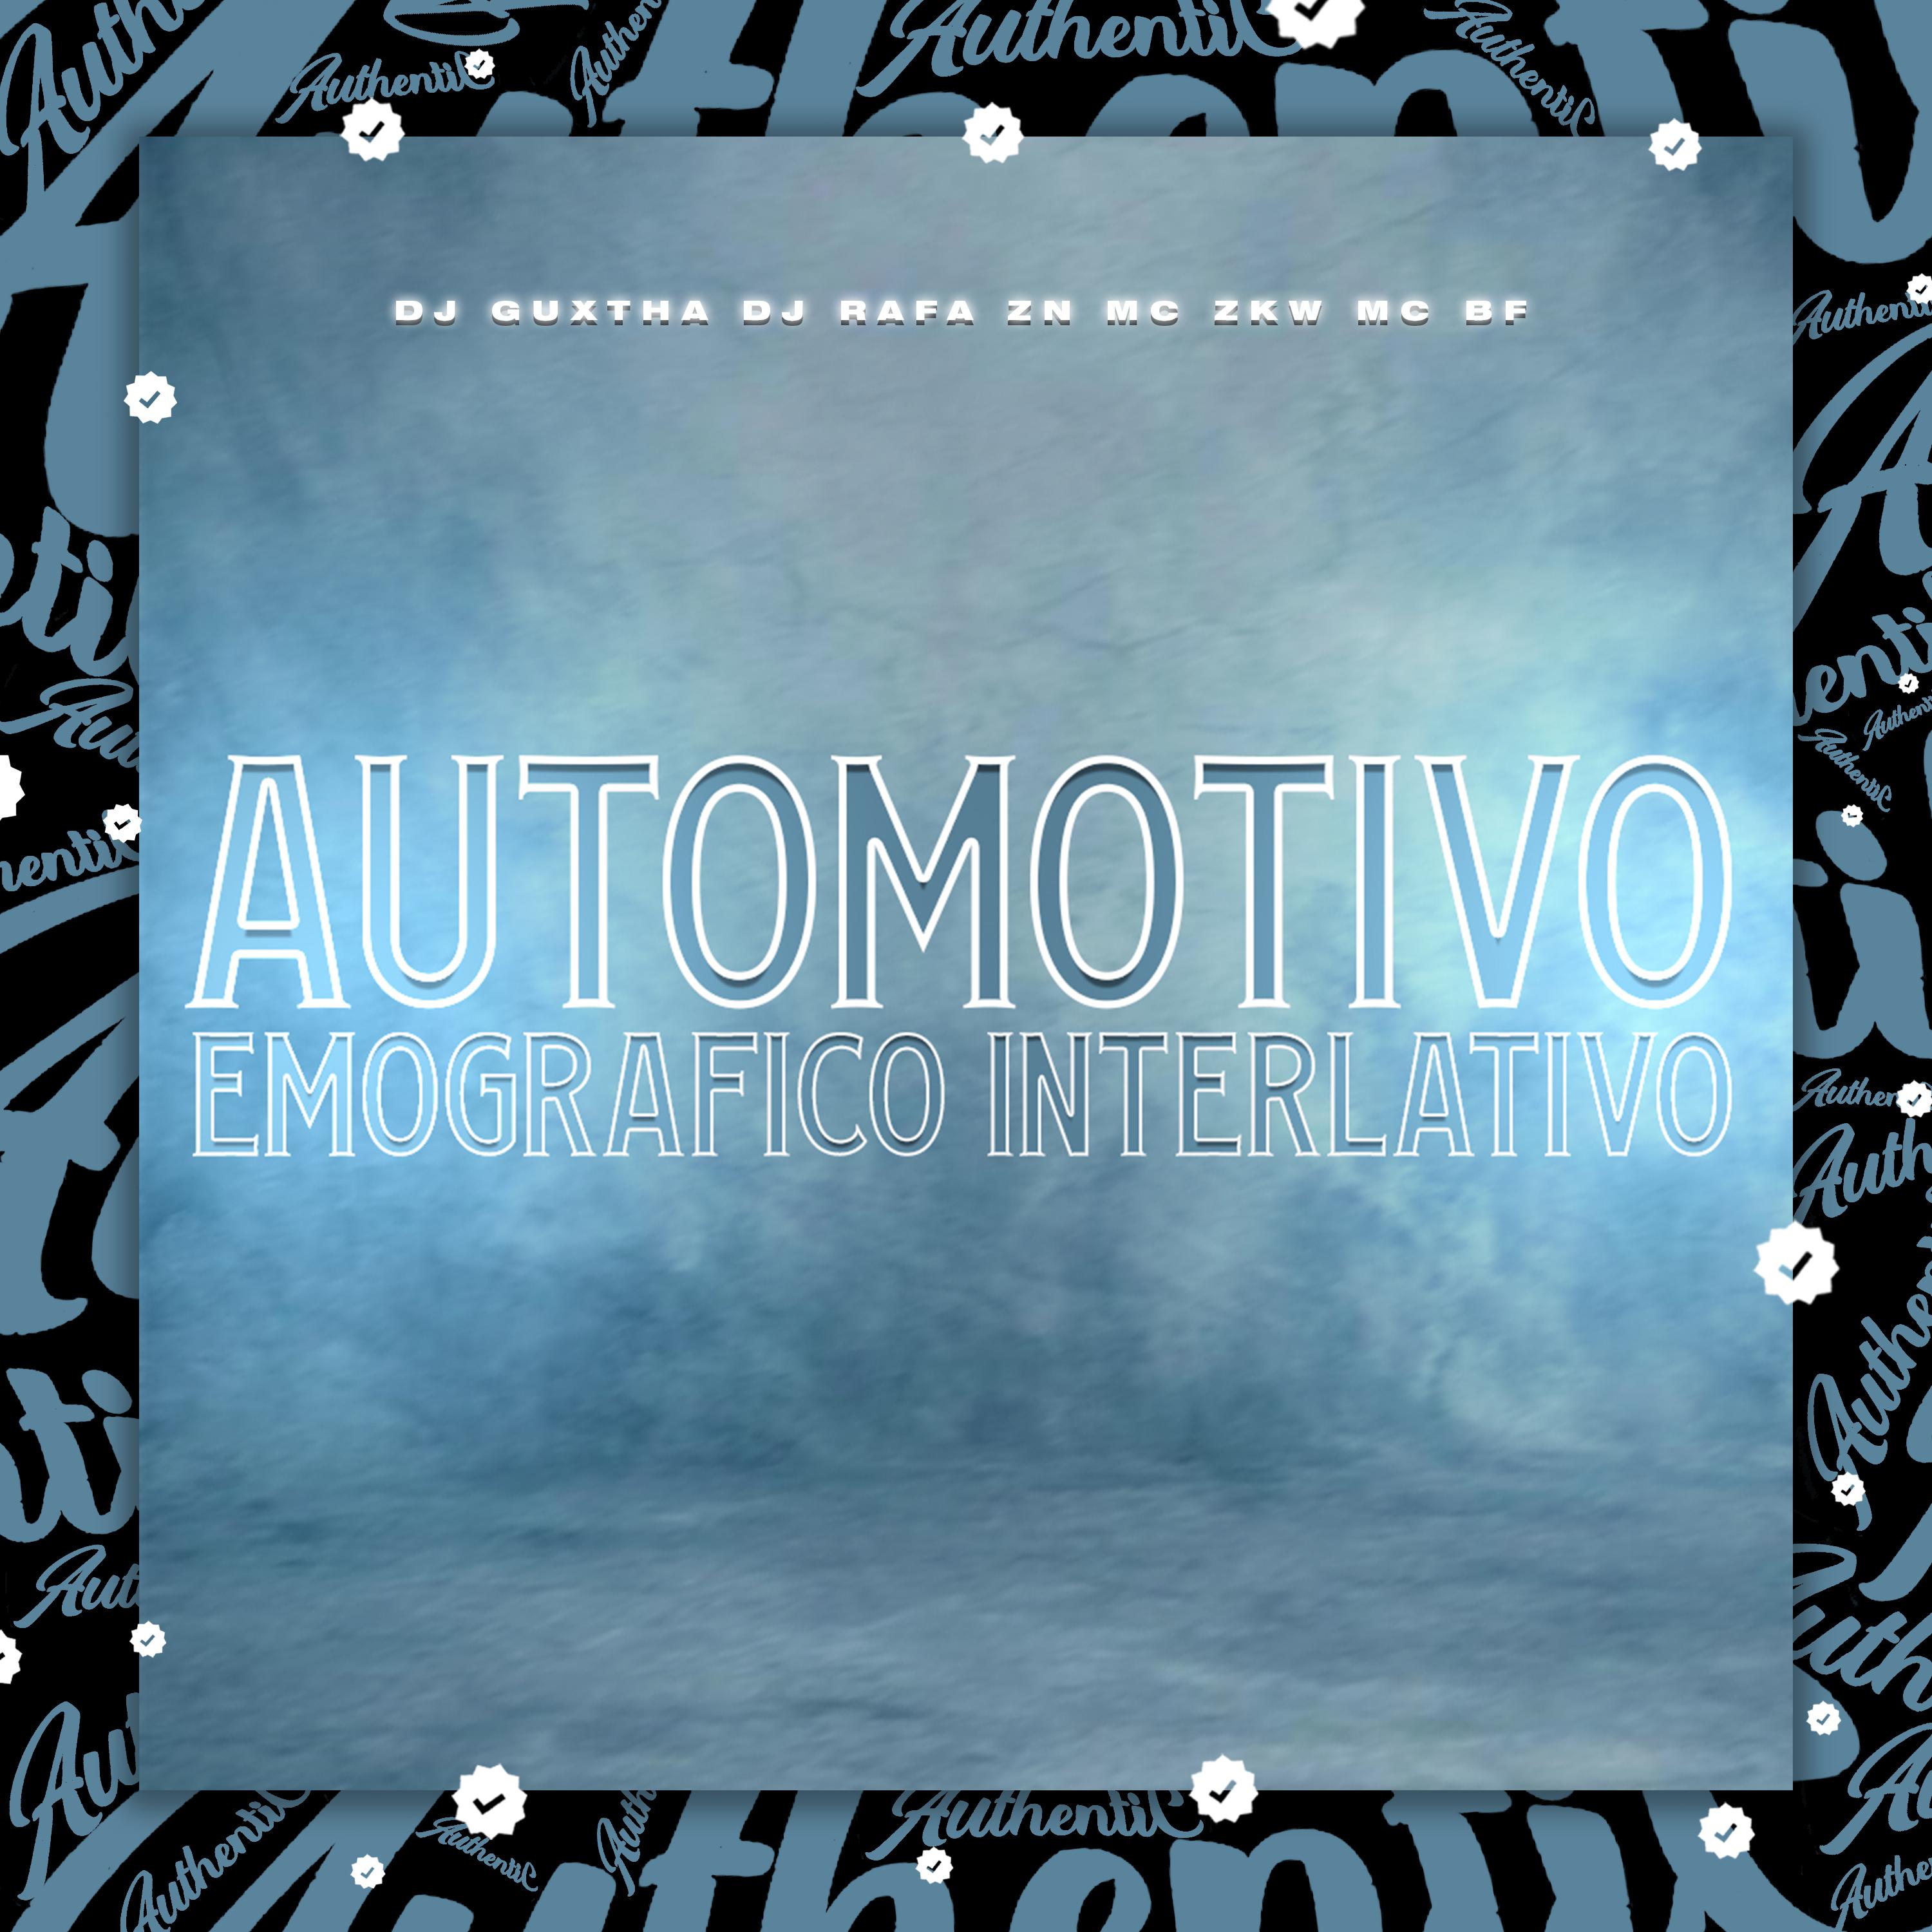 DJ GUXTHA - Automotivo Emografico Interlativo